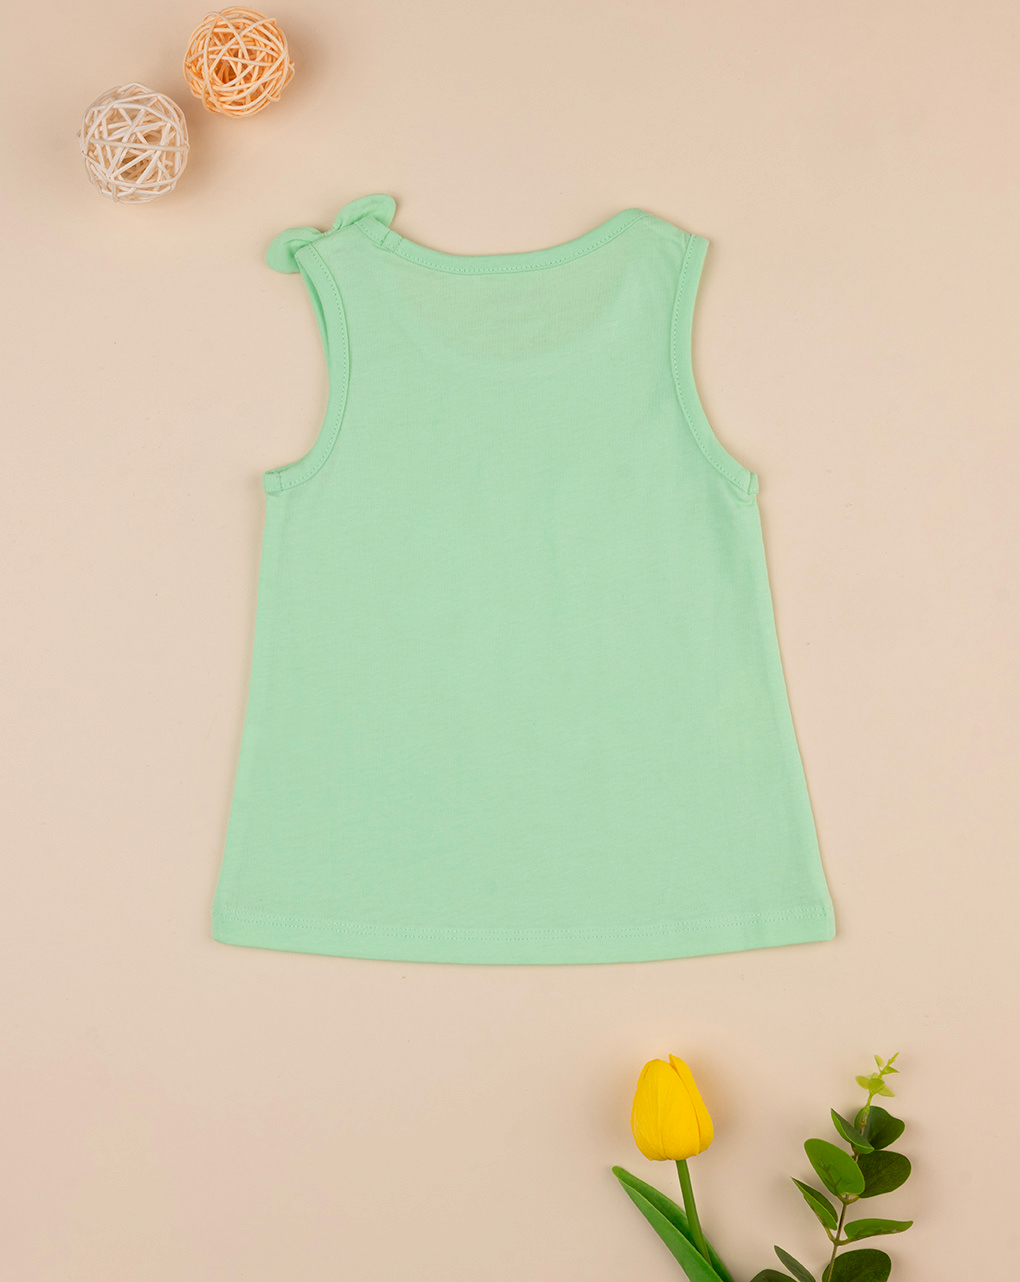 βρεφική αμάνικη μπλούζα πράσινη με μαργαρίτες για κορίτσι - Prénatal